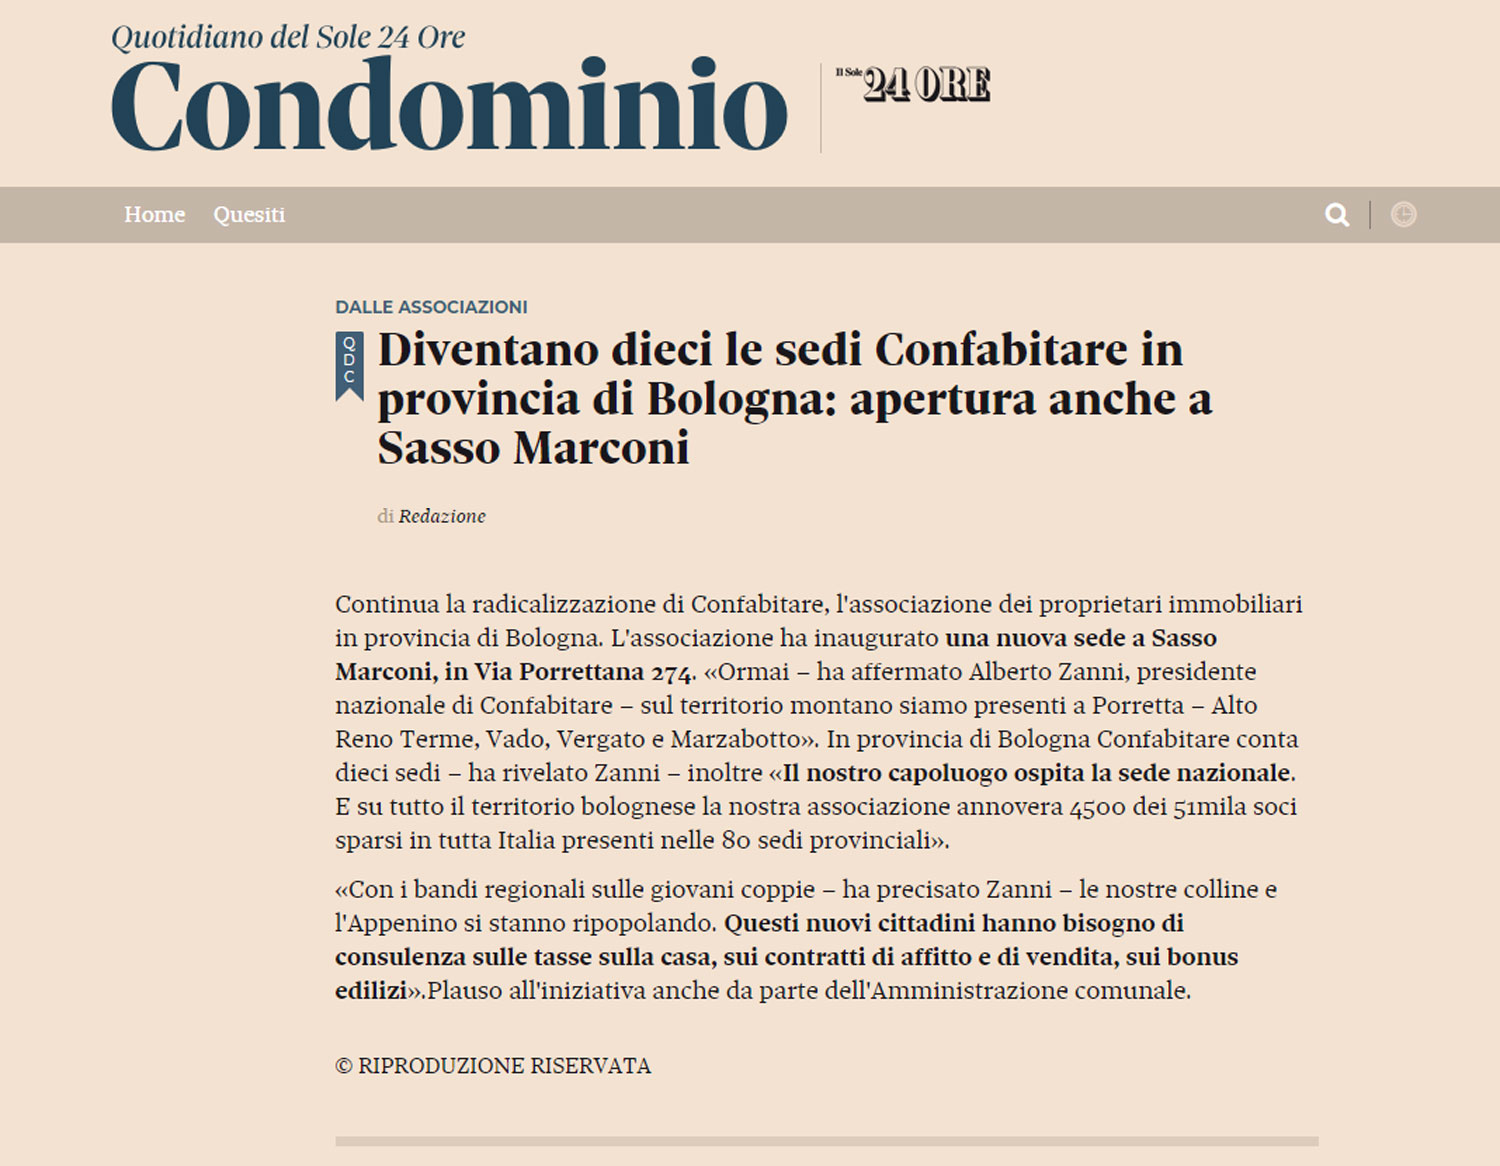 Diventano dieci le sedi Confabitare in provincia di Bologna: apertura anche a Sasso Marconi